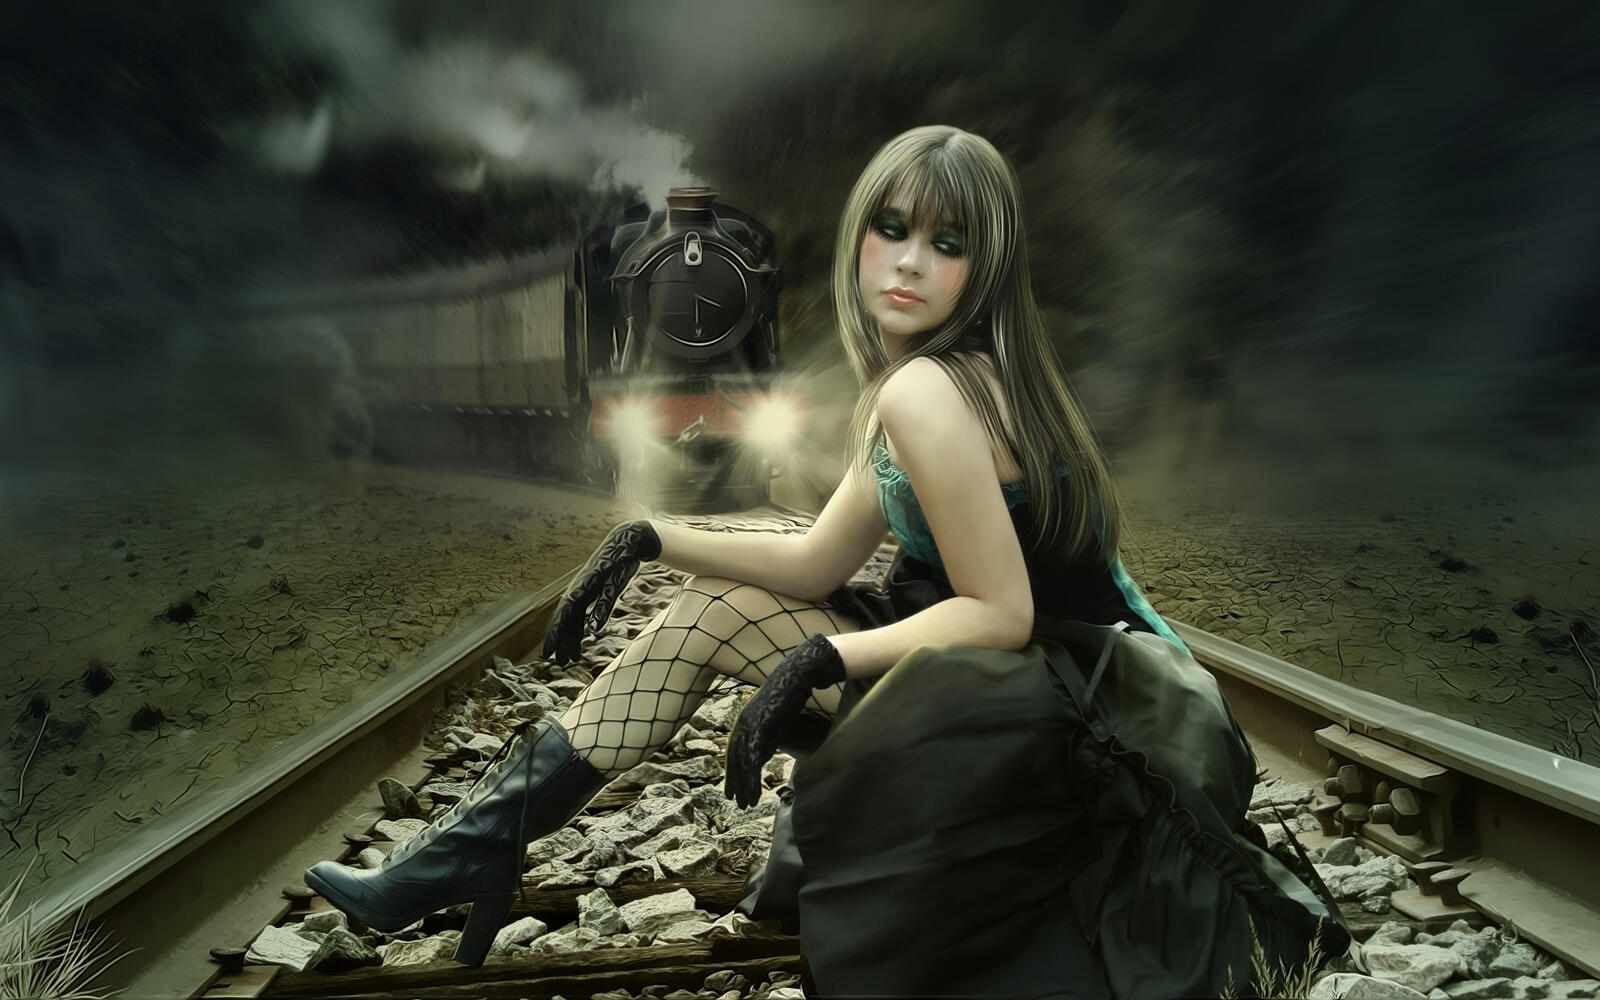 Бесплатное фото Фэнтези девушка сидит на рельсах с приближающимся поездом